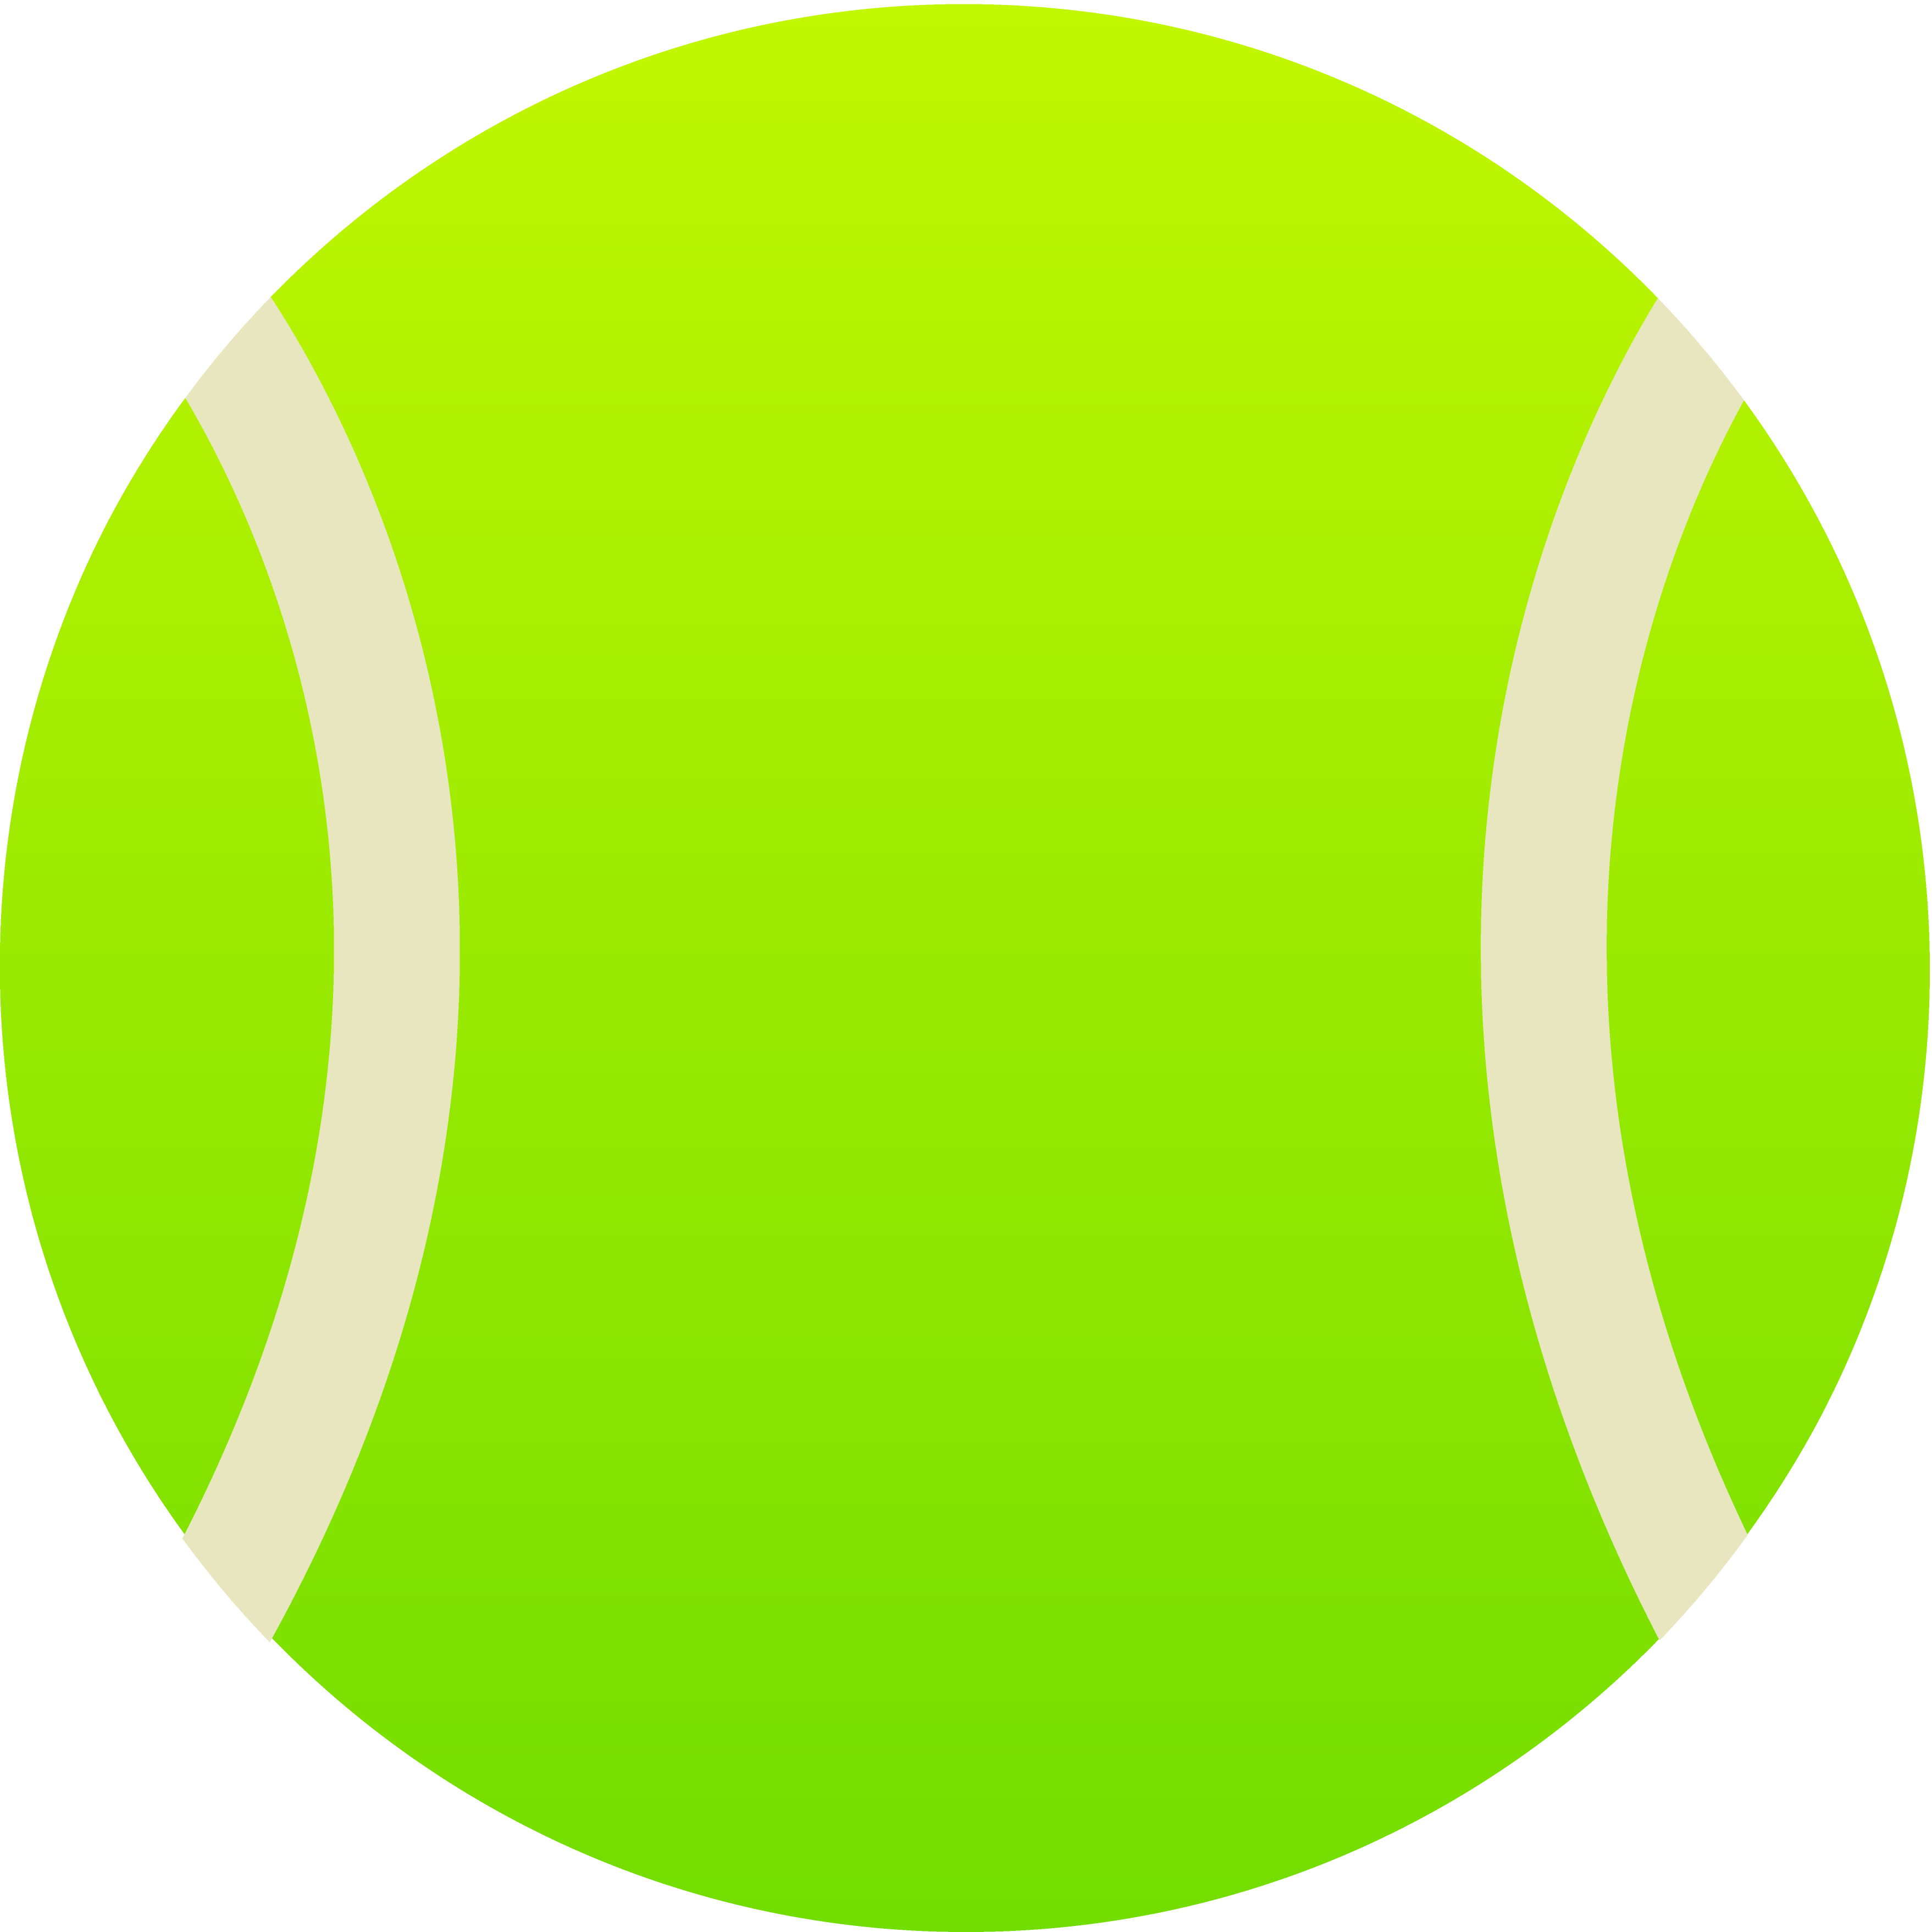 Free tennis ball clipart 3